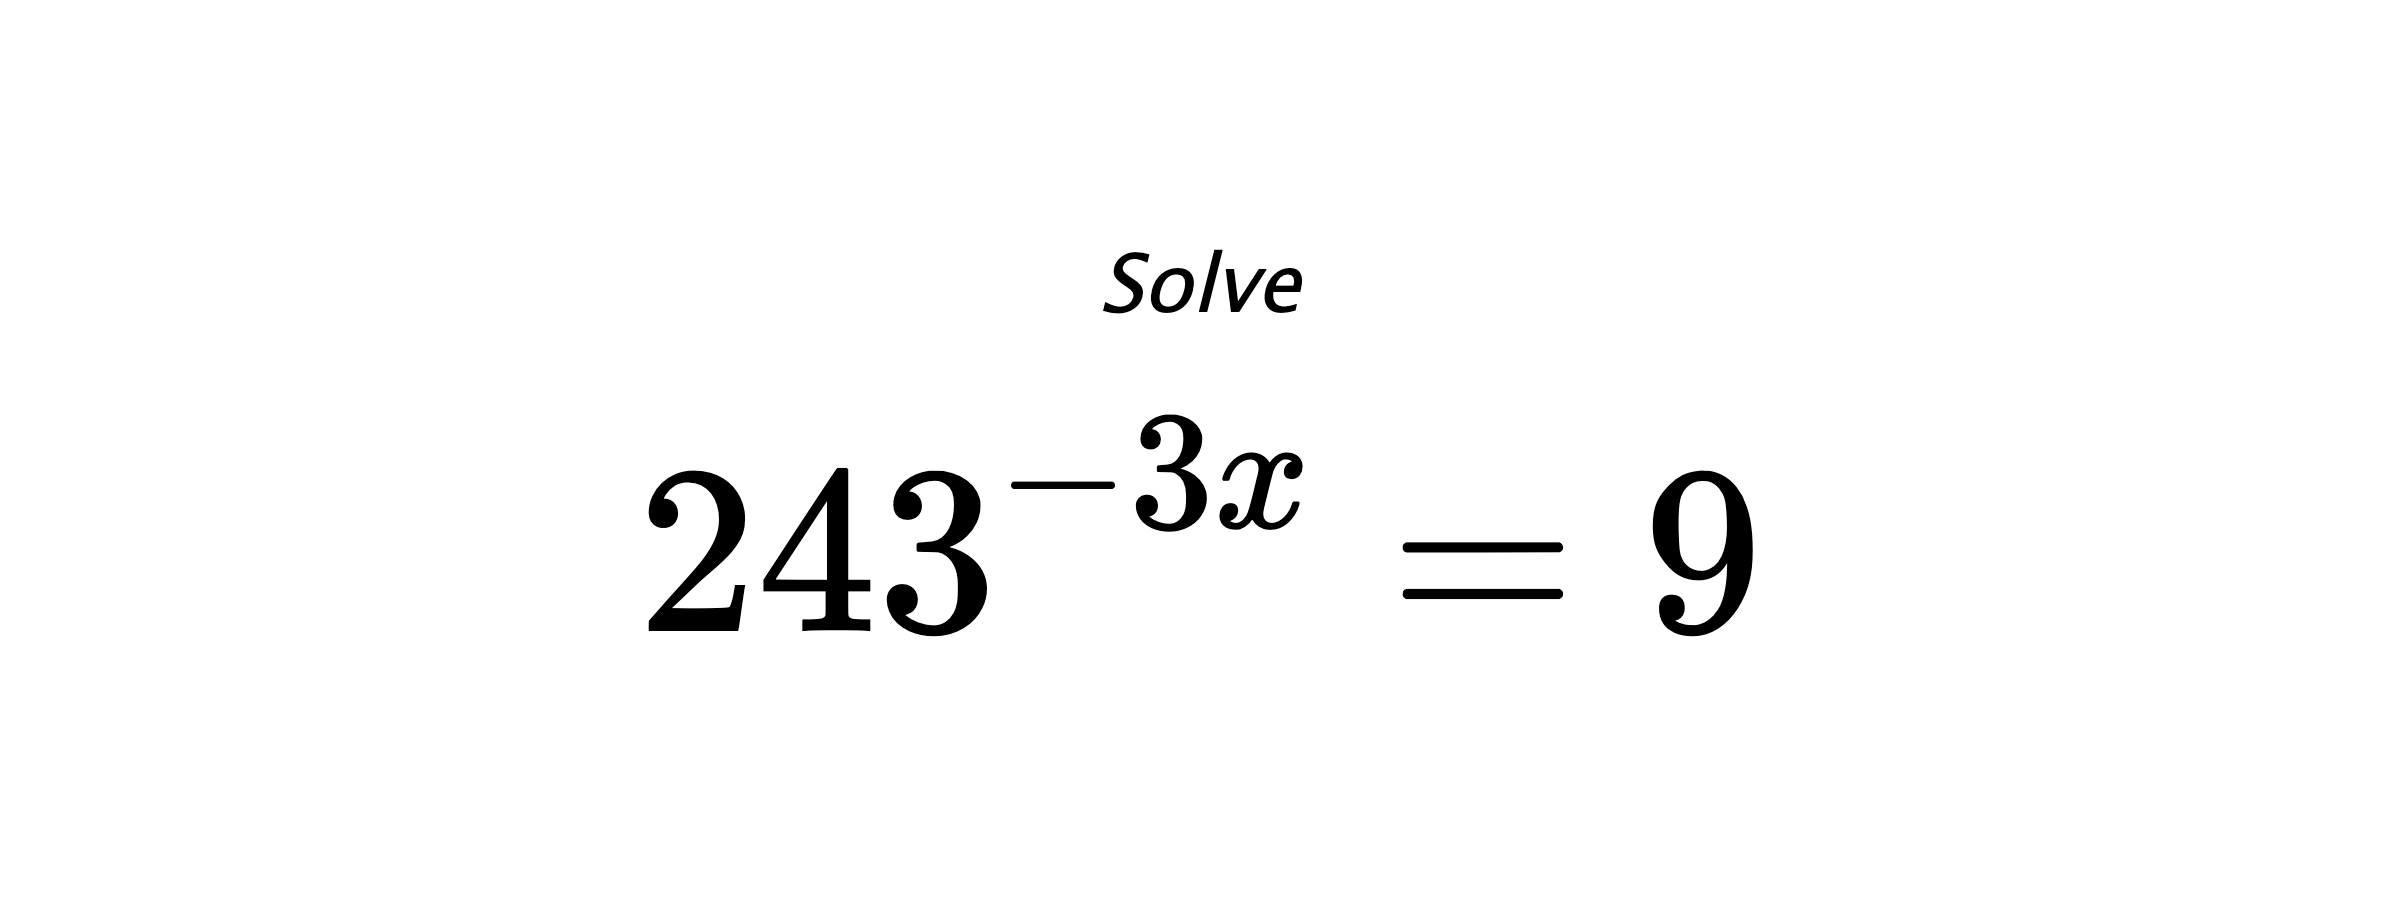 Solve $ 243^{-3x} = 9 $